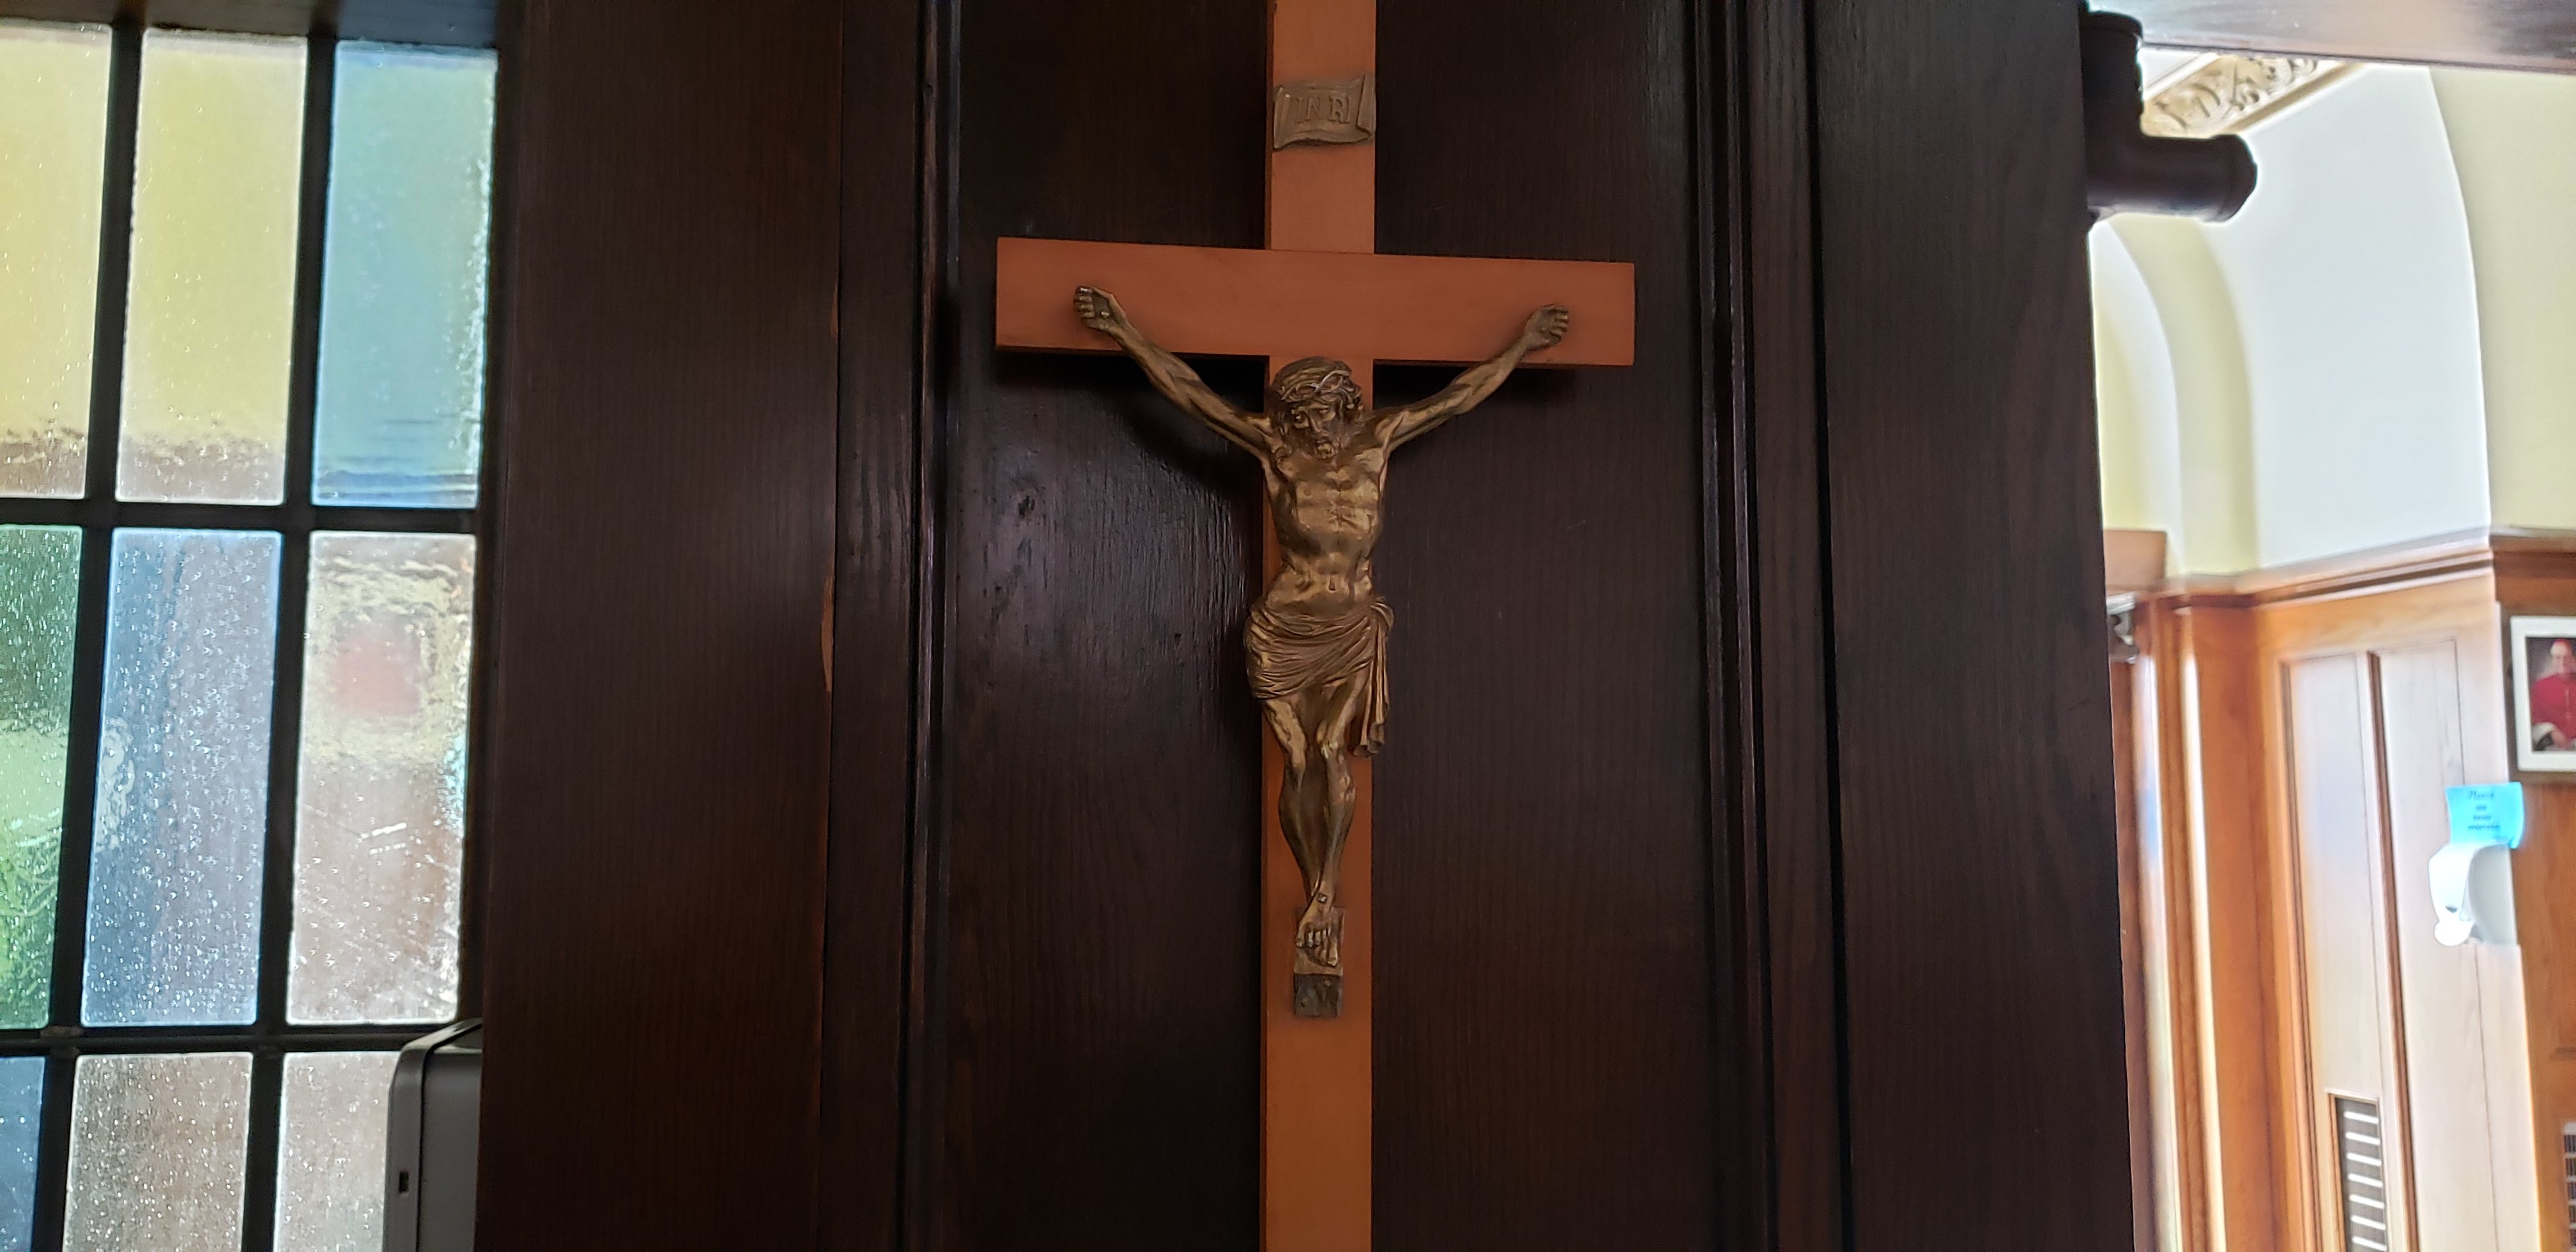 Crucifix on a brown door